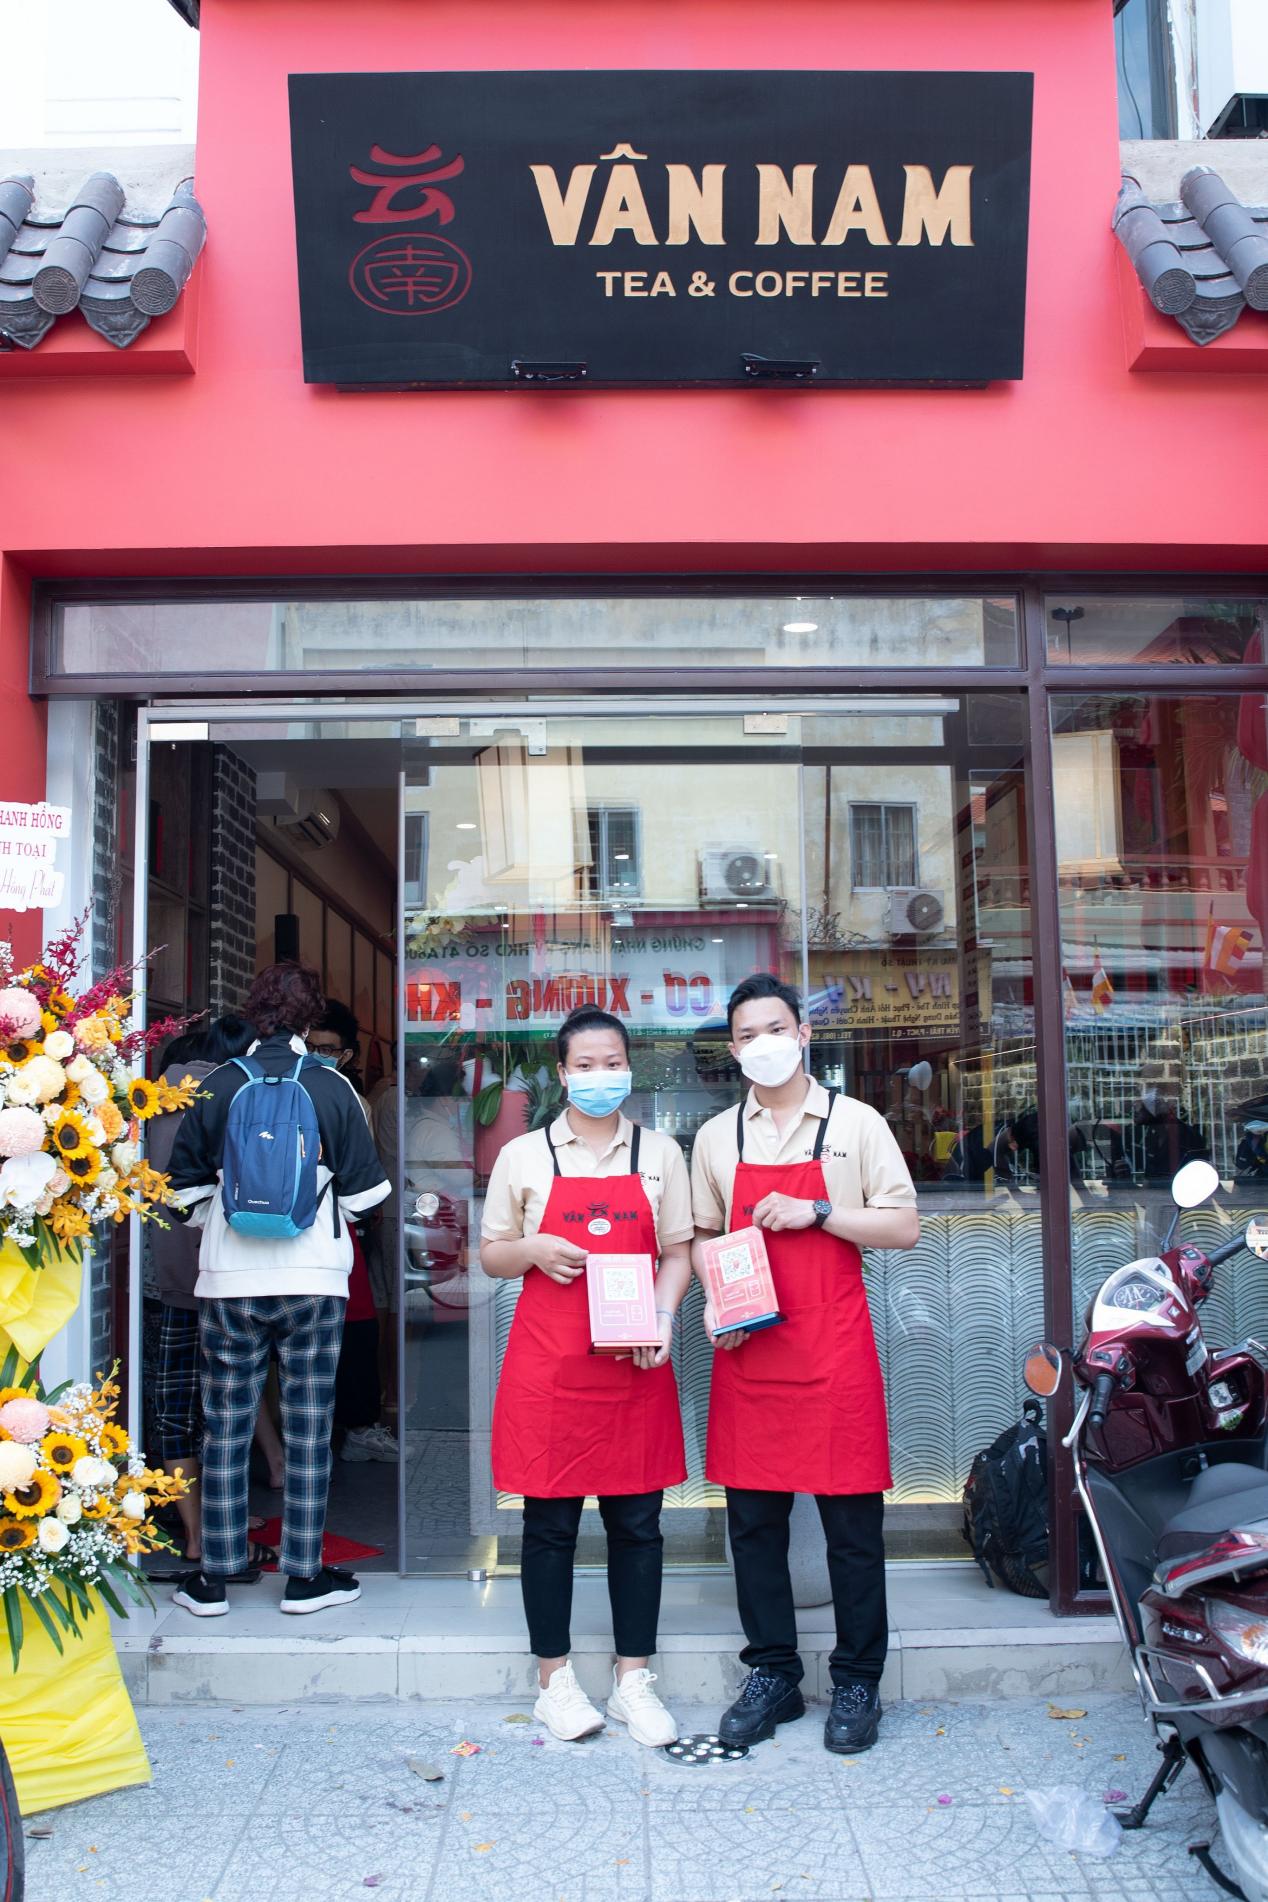 Khai trương thương hiệu Vân Nam Tea & Coffee tại TP. Hồ Chí Minh - Ảnh 3.